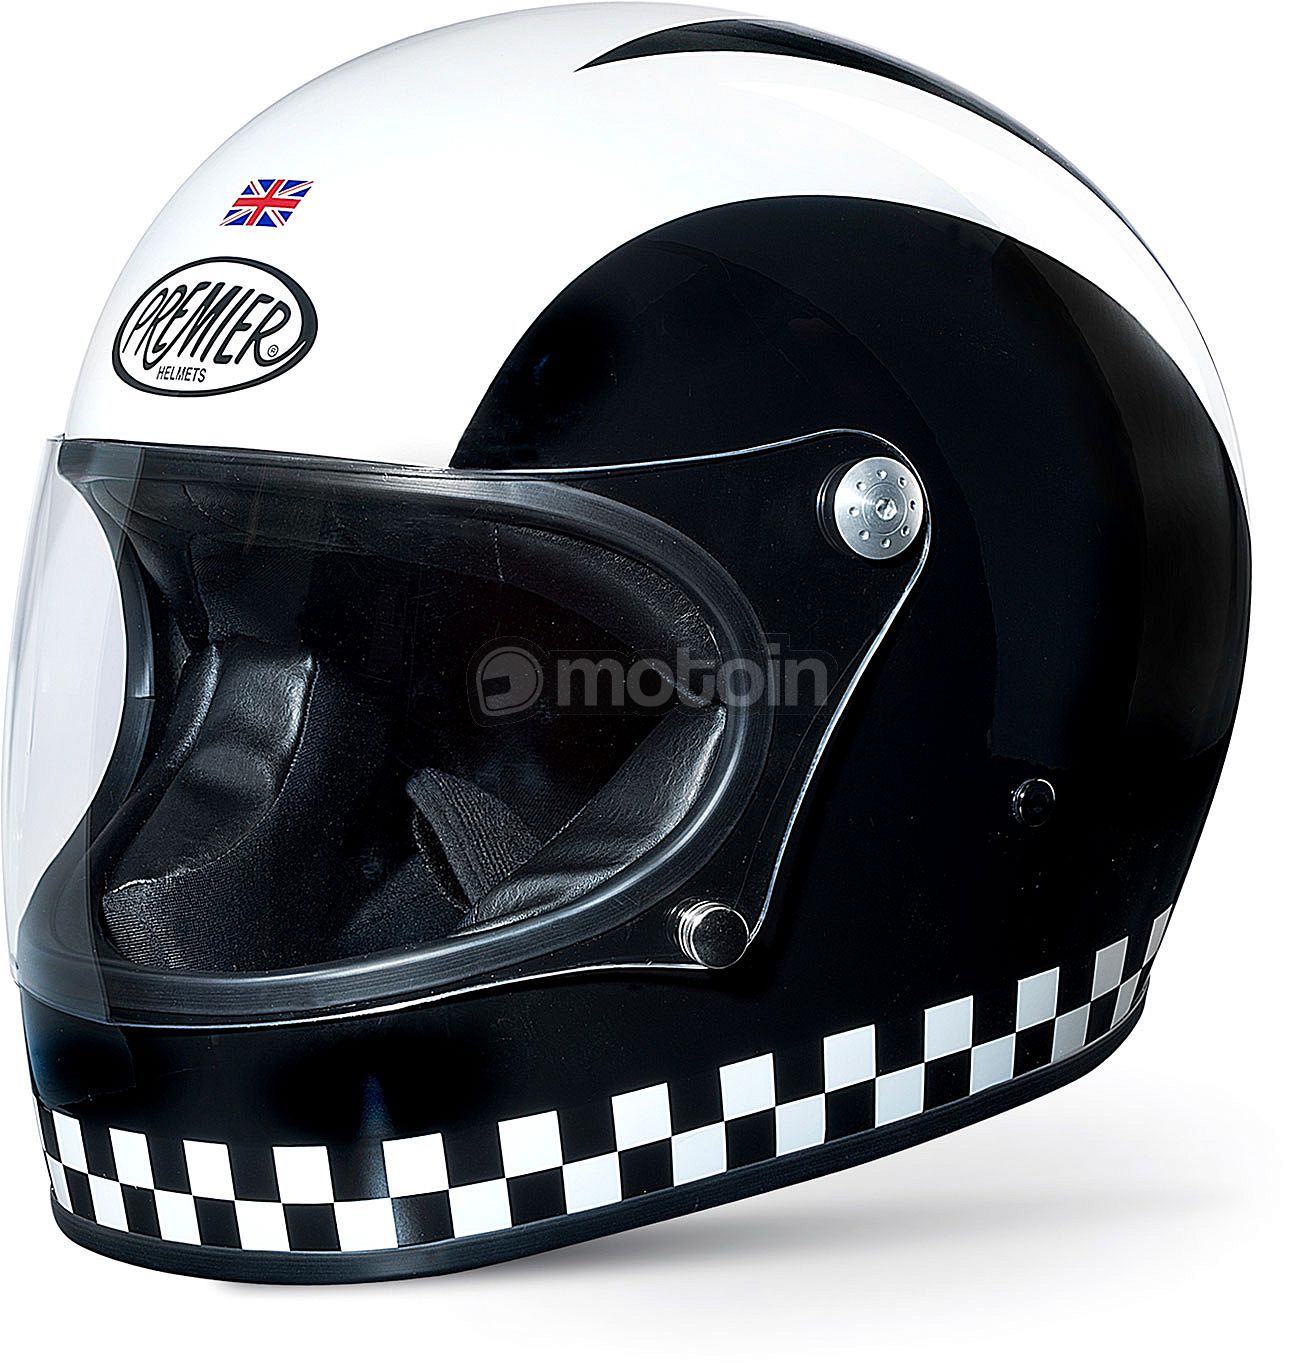 Premier Trophy Retro color negro y blanco Casco integral para motocicleta